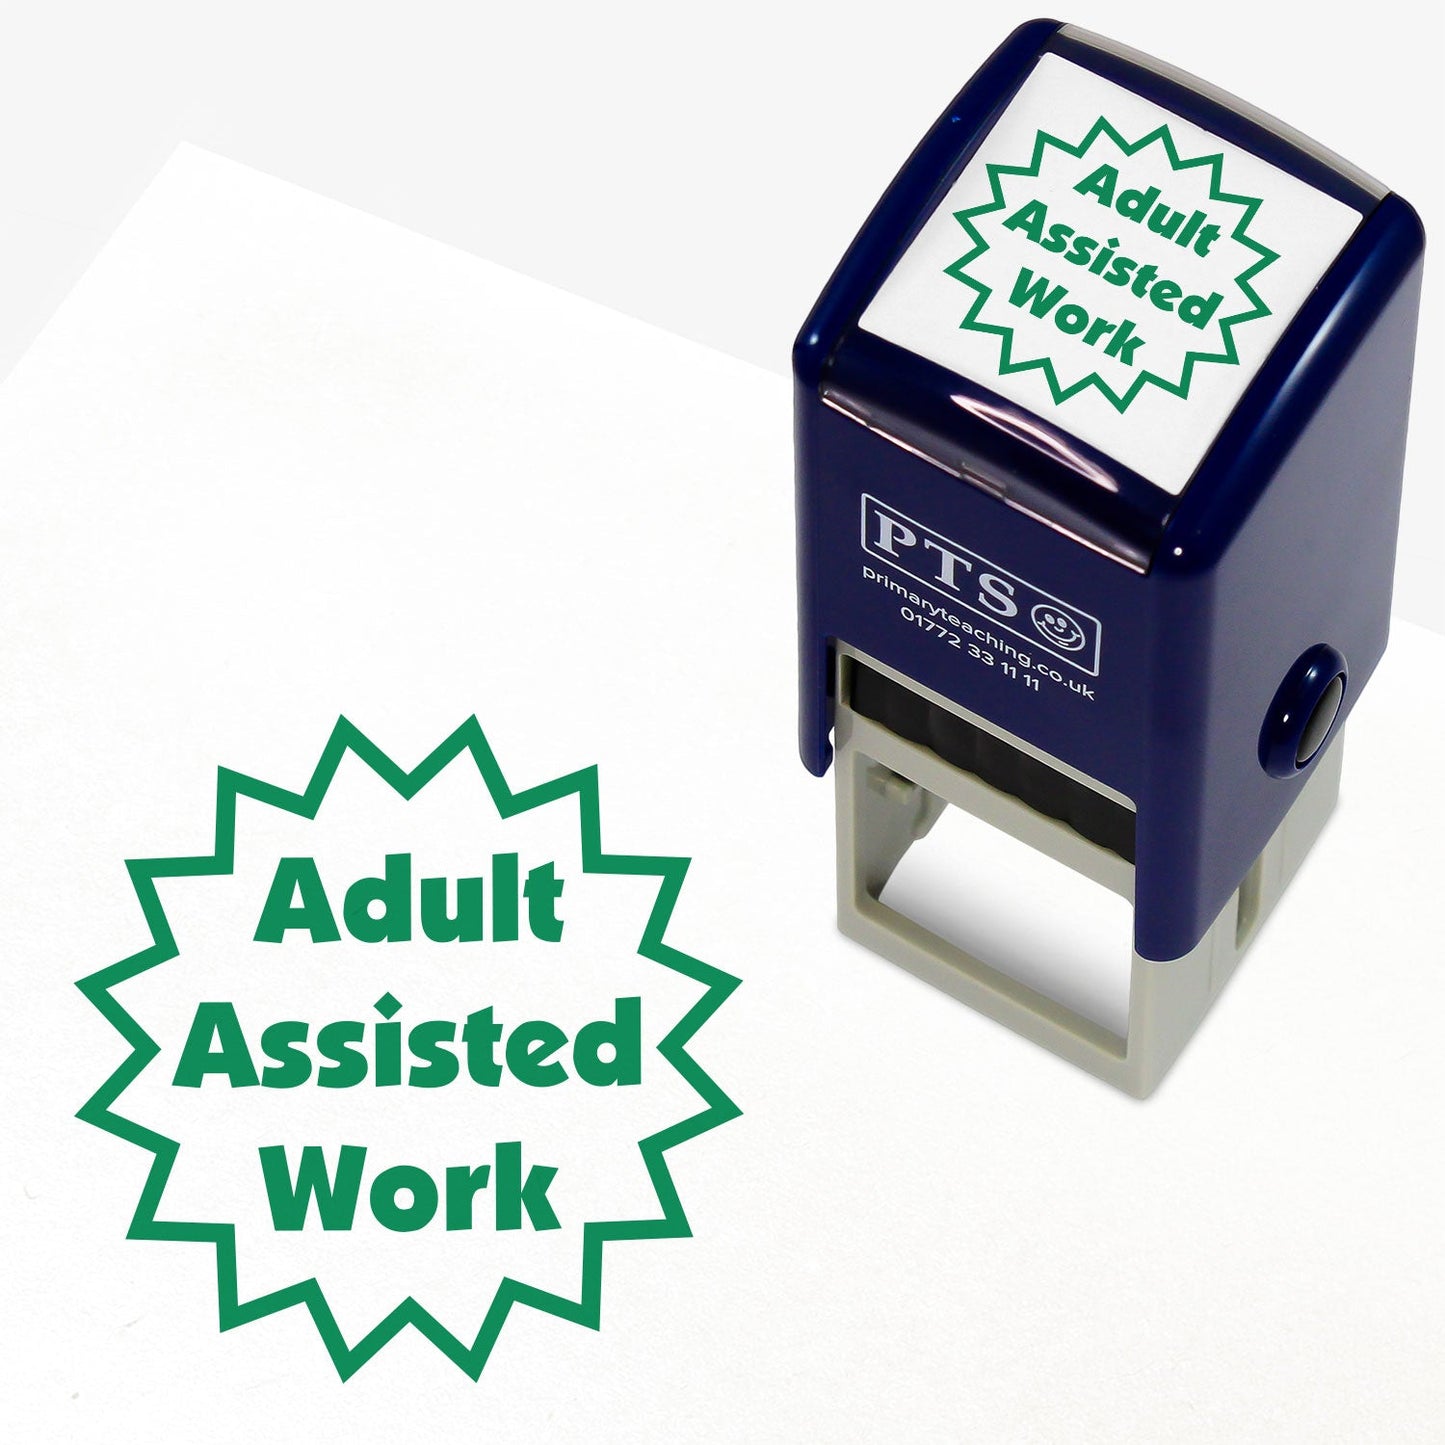 Adult Assisted Work Stamper - 25mm